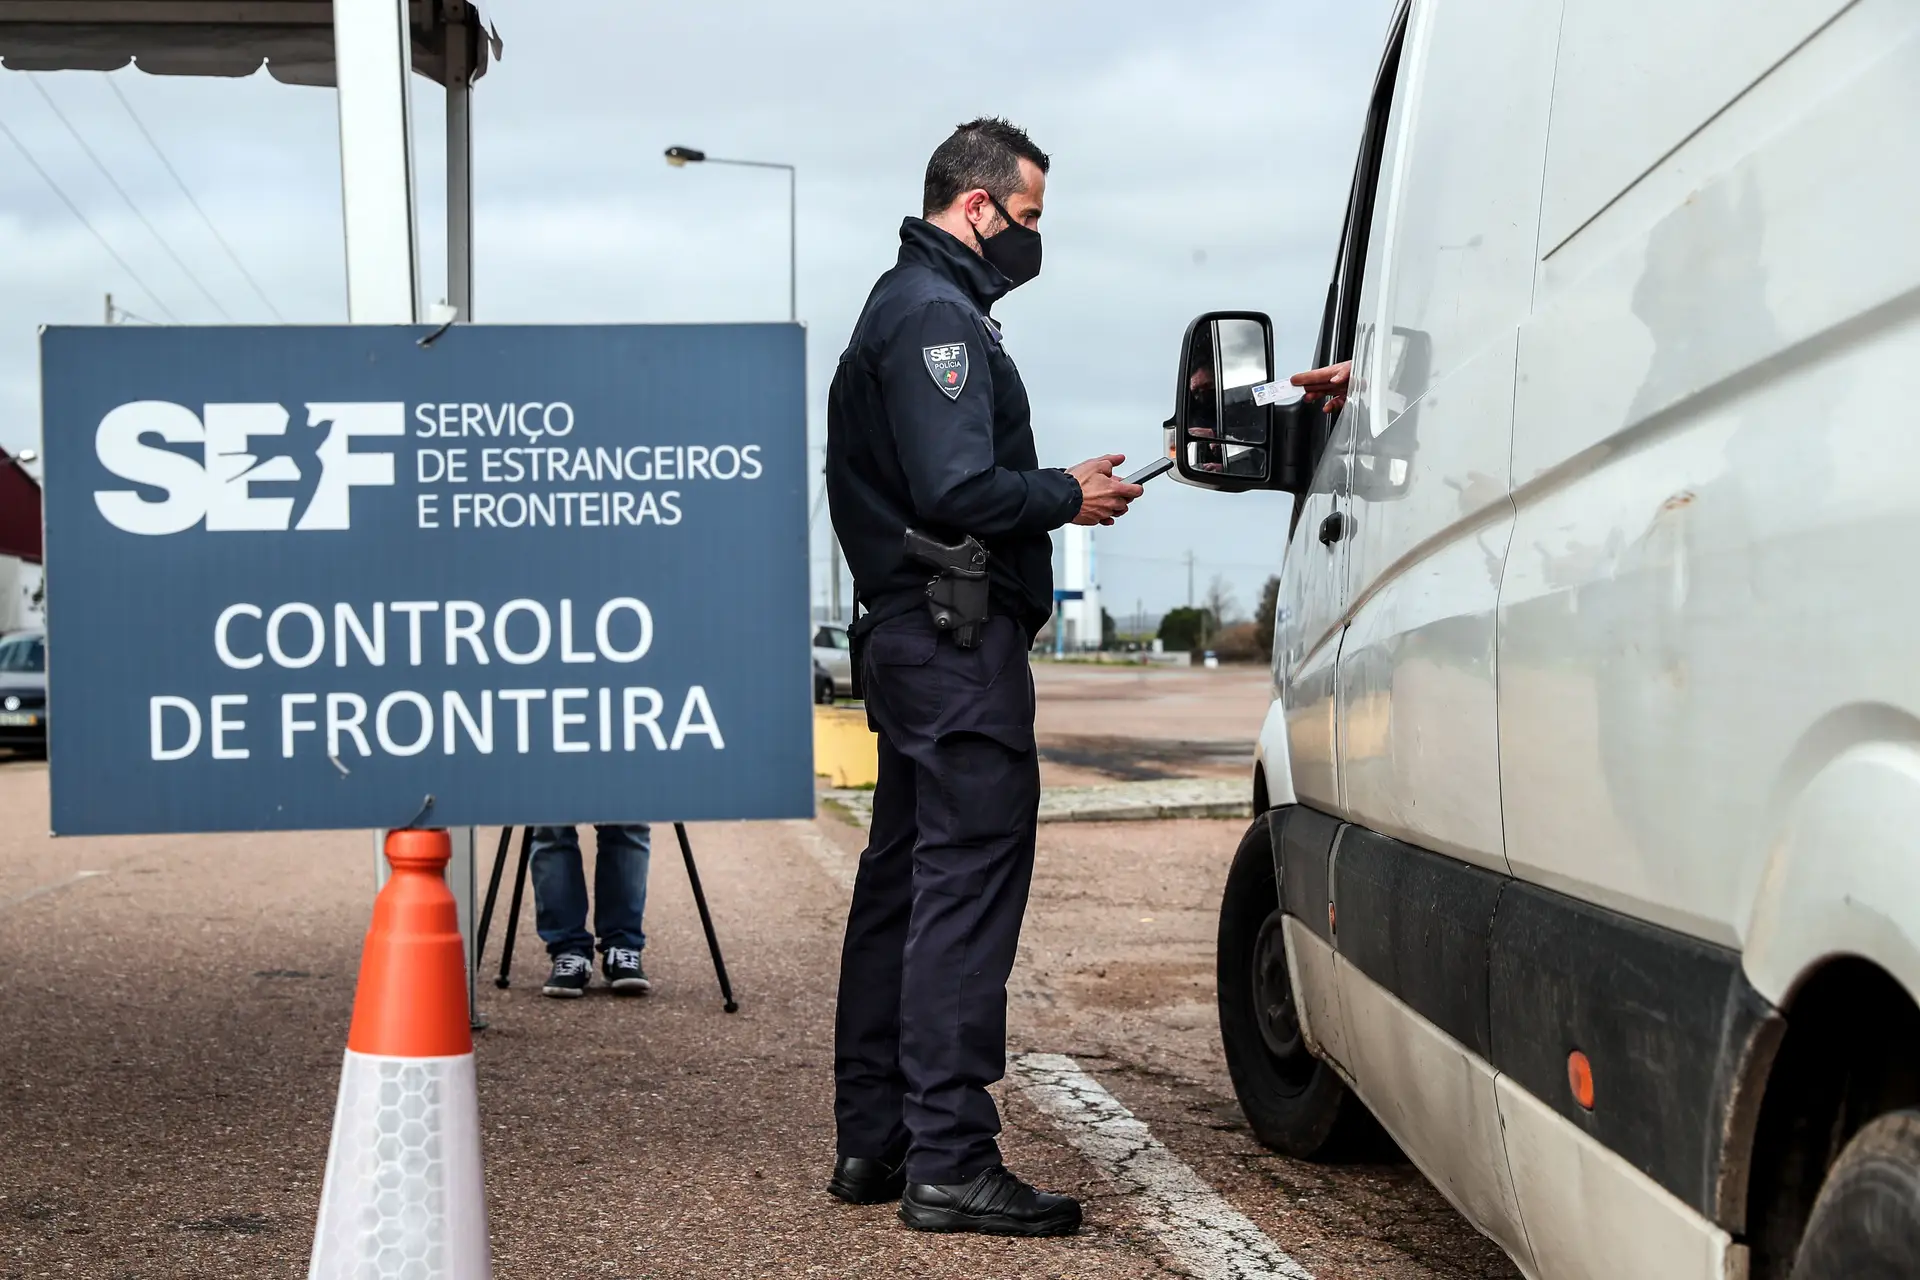 Ameaça terrorista? Em Portugal "não há razões" para fechar fronteiras, garante MAI